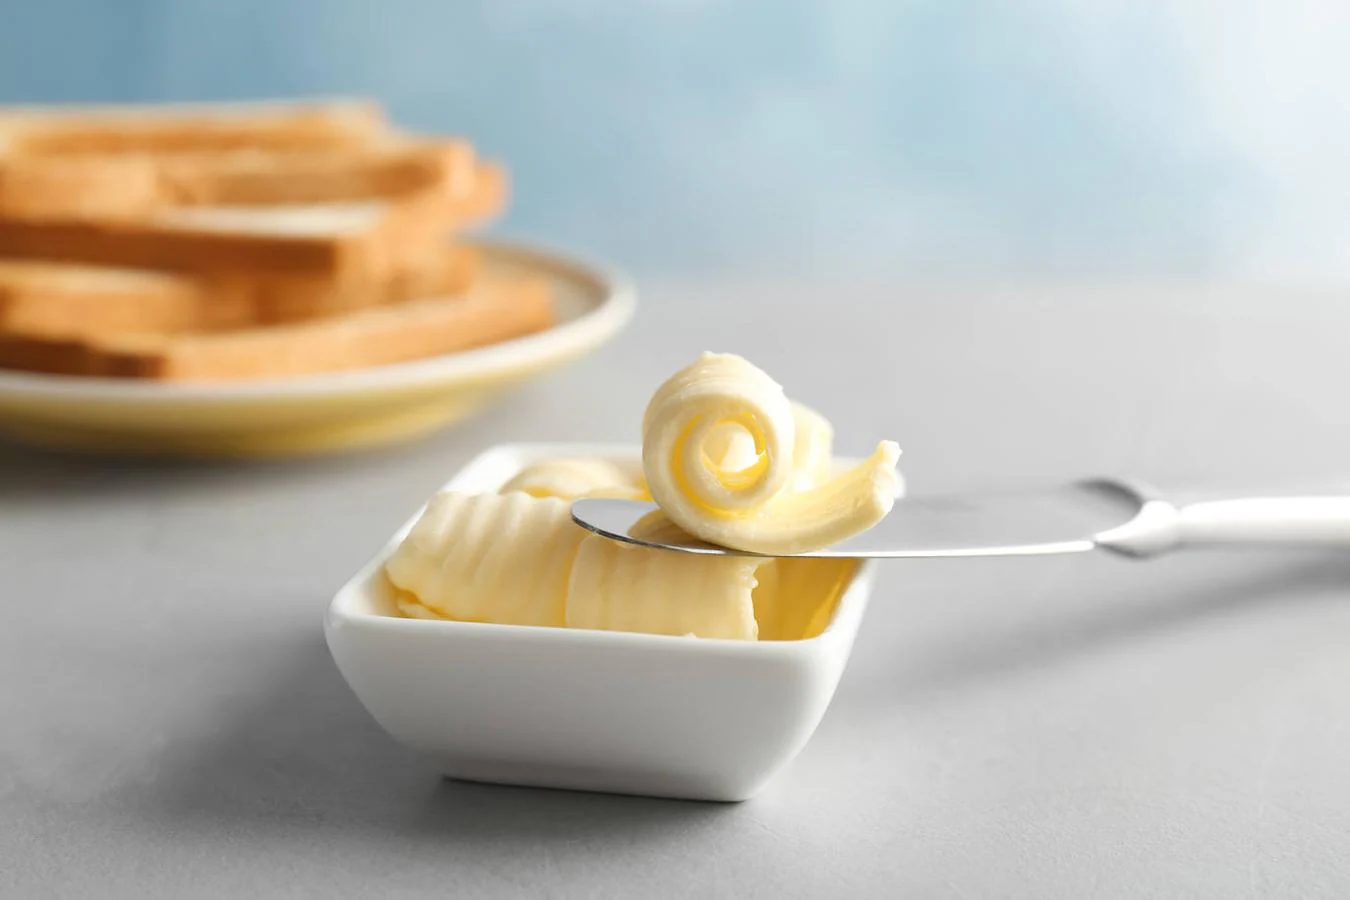 Mantequilla. Como el resto de productos derivados de los lácteos, la mantequilla tiene un pequeño aporte de vitamina D, 0,70 microgramos por cada 100 gramos, según la Bedca. La mantequilla, que se aconseja tomar con moderación, puede ayudarnos a darle el toque final a postres, como <a href="https://www.abc.es/bienestar/alimentacion/recetas-saludables/abci-secreto-para-hacer-bizcocho-perfecto-revelado-tres-foodies-youtube-201912090154_noticia.html">bizcochos</a> o galletas.